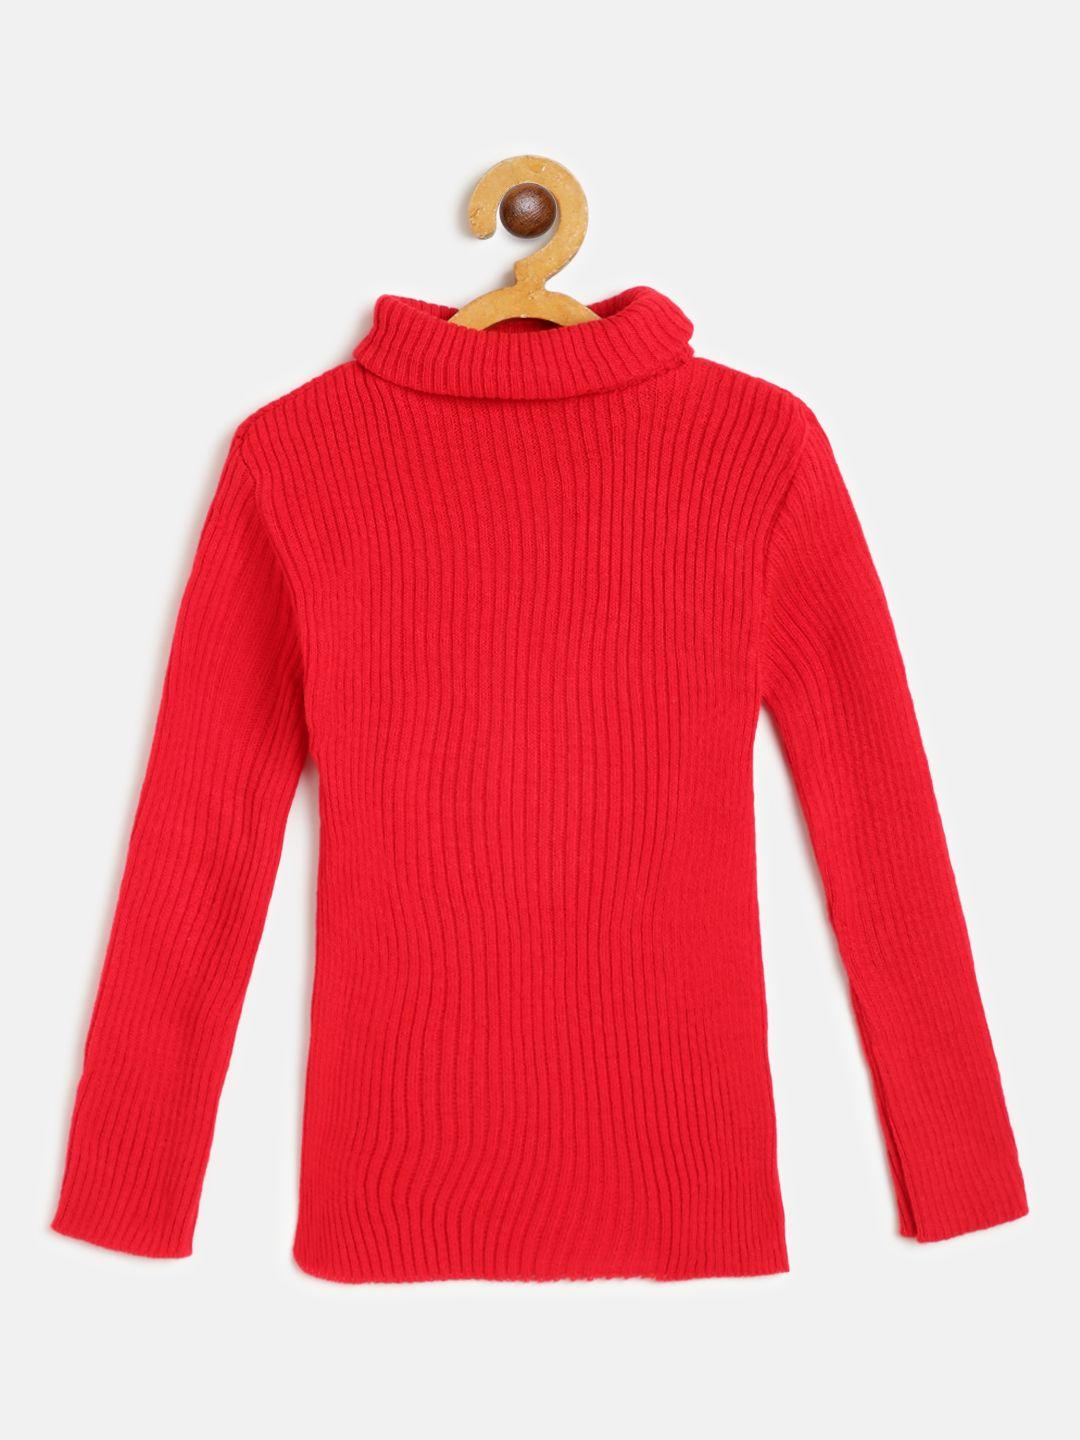 ad & av boys red ribbed woollen pullover